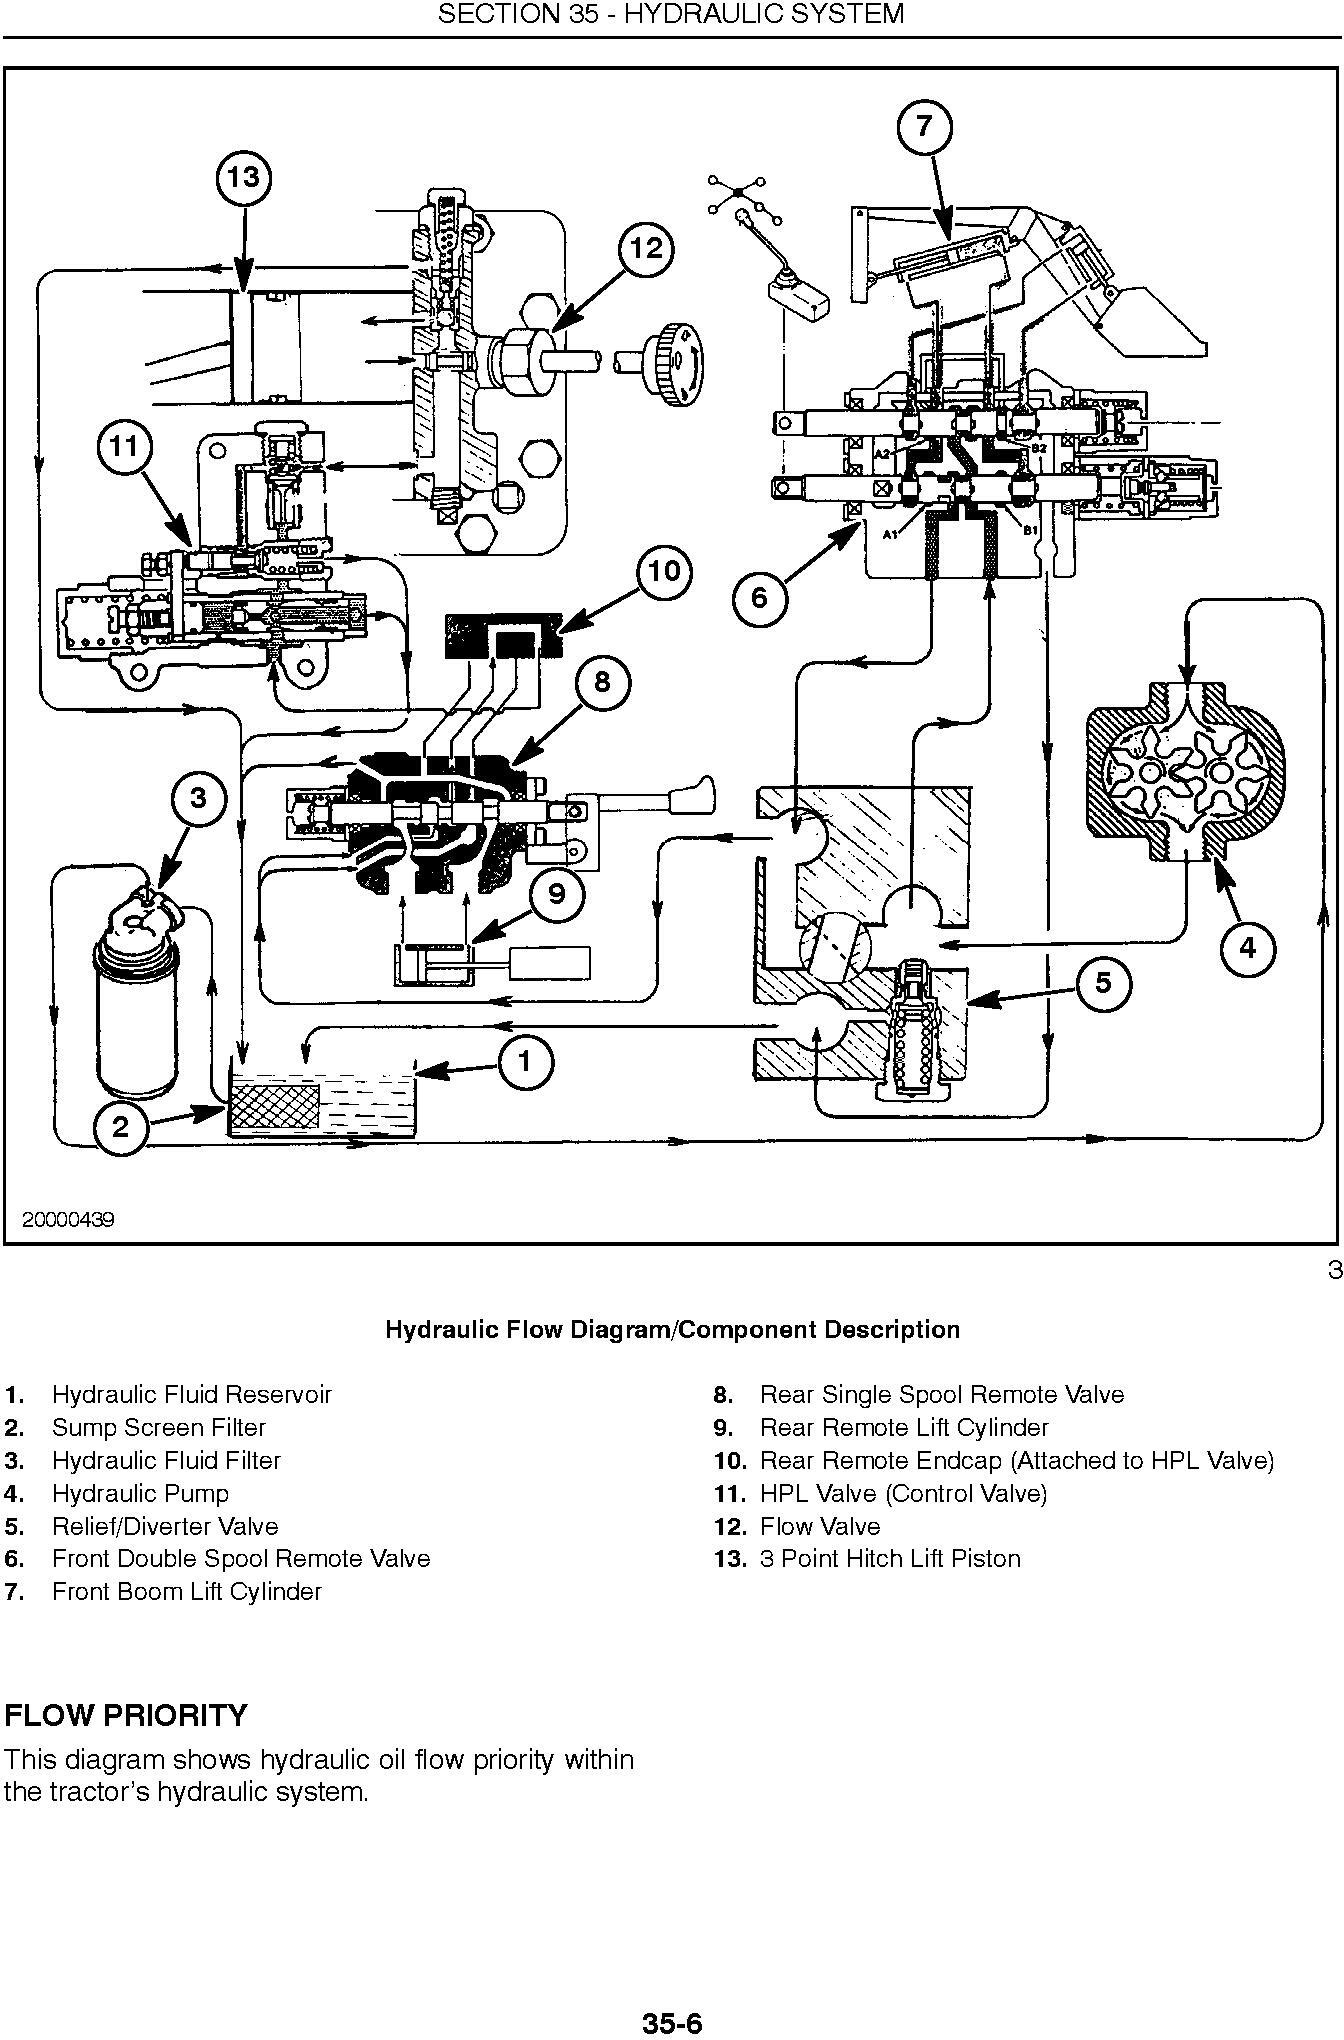 New Holland TC35, TC35D, TC40, TC40D, TC45, TC45D Tractor Complete Service Manual - 2